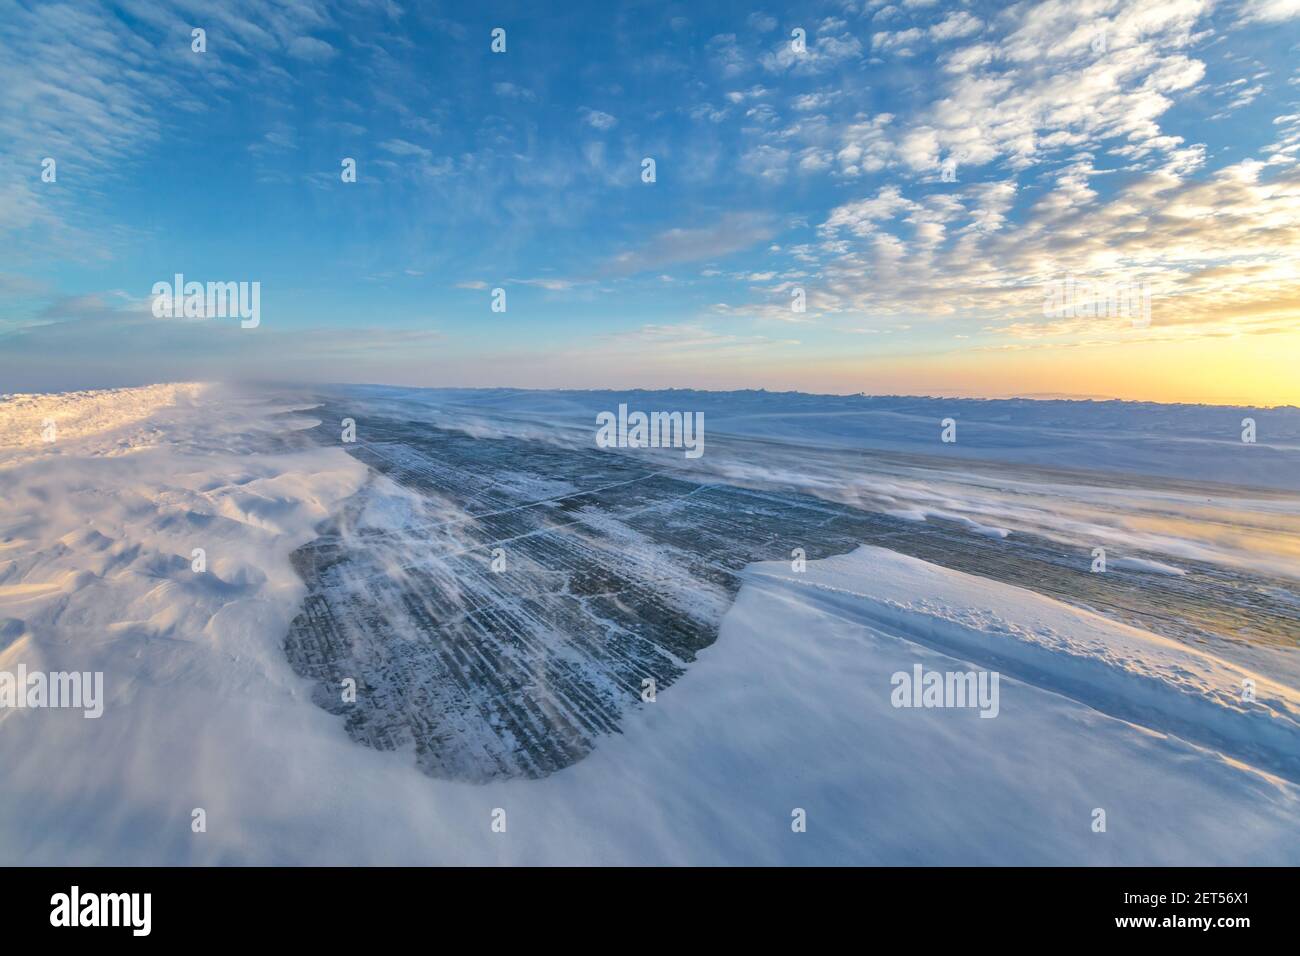 La neige dévie le long de la route glaciaire en hiver, dans les Territoires du Nord-Ouest, dans l'Arctique canadien. Banque D'Images